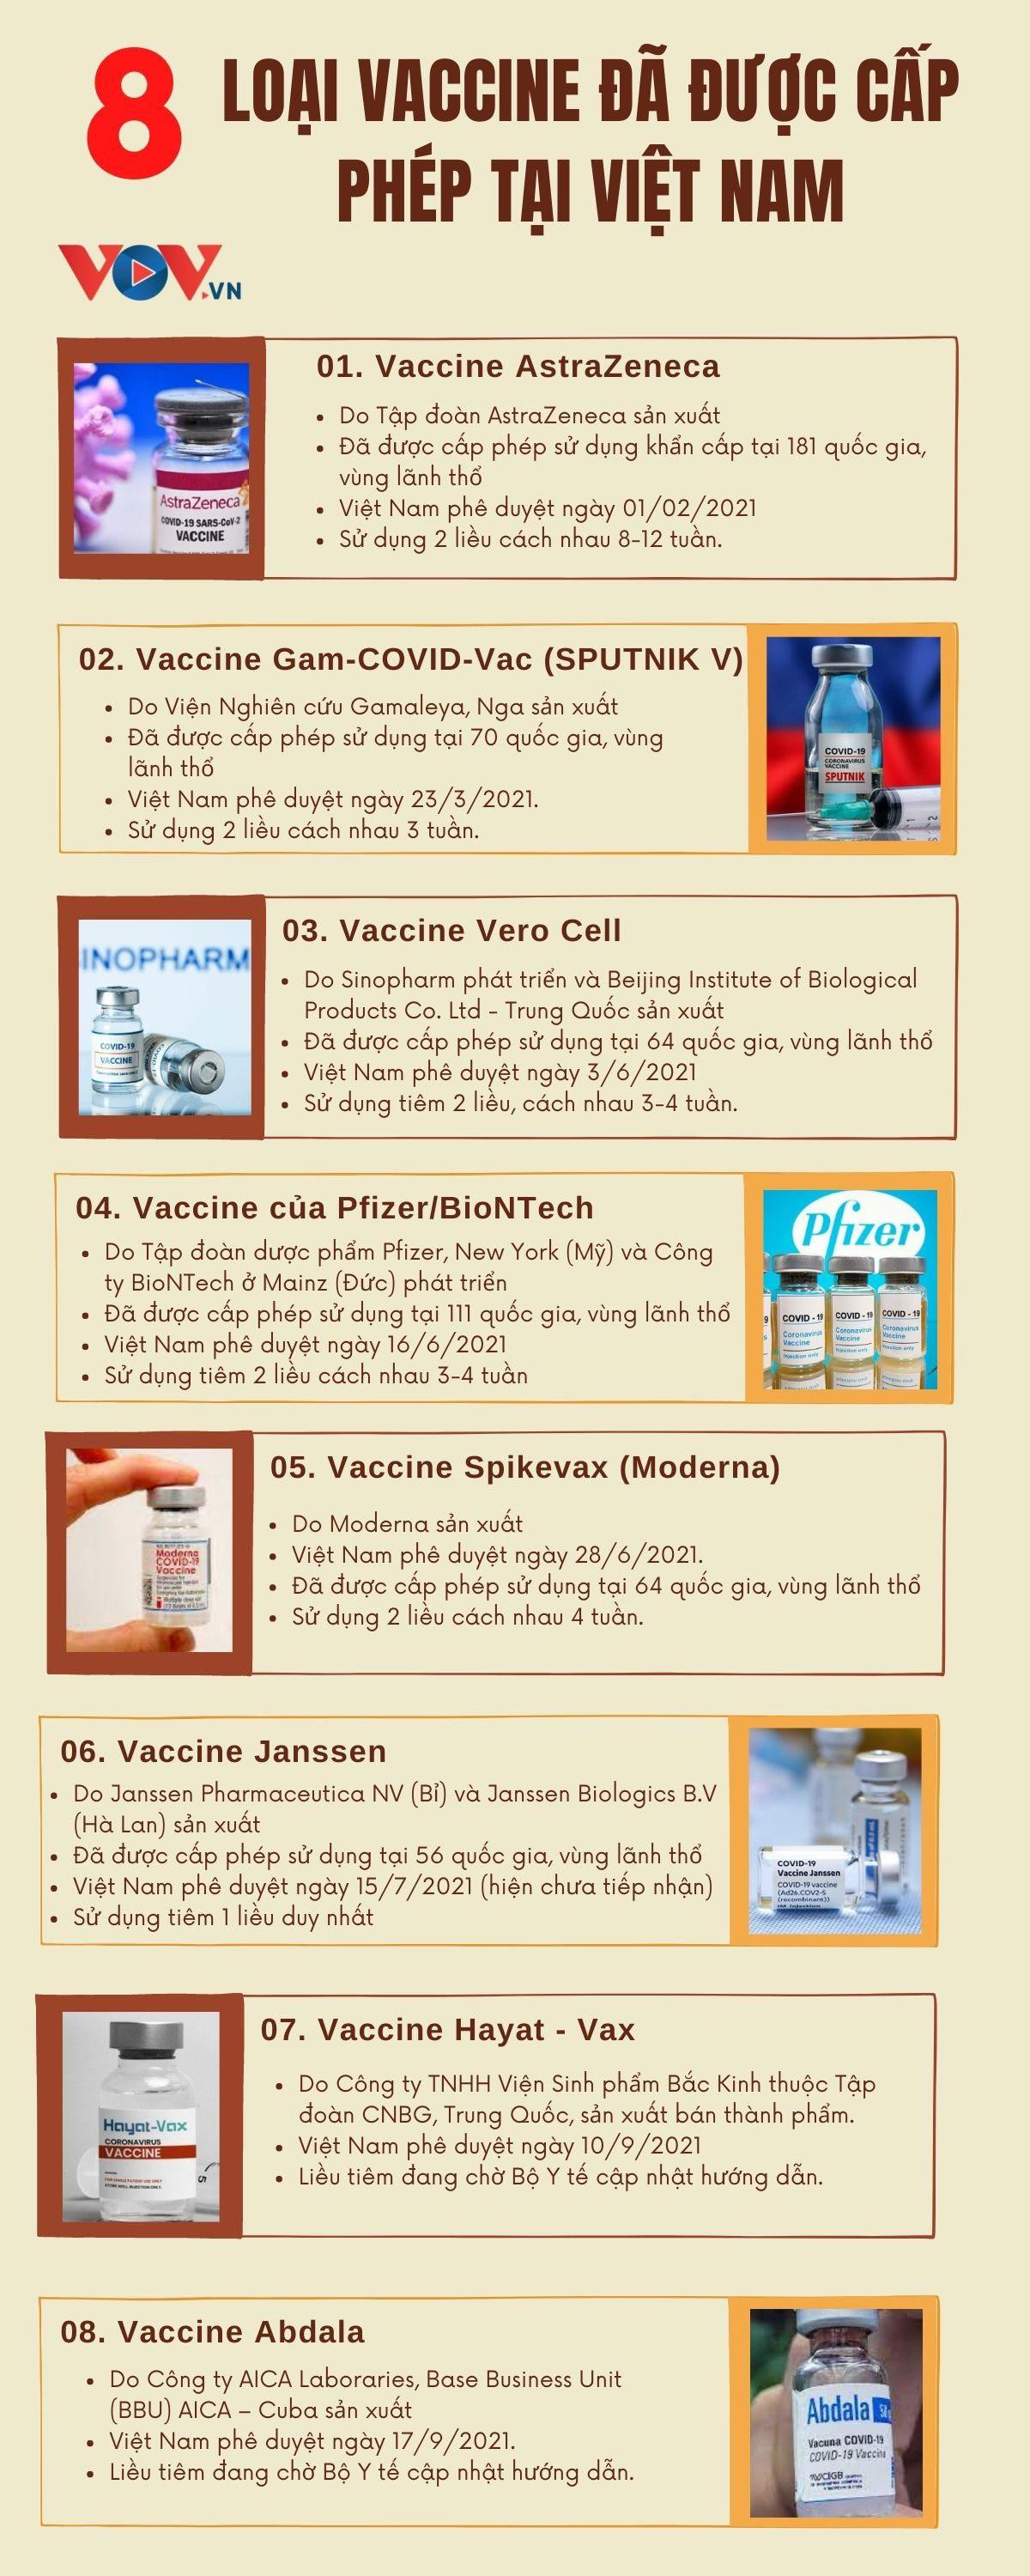 Infographic: 8 loại vaccine COVID-19 được cấp phép tại Việt Nam - 1